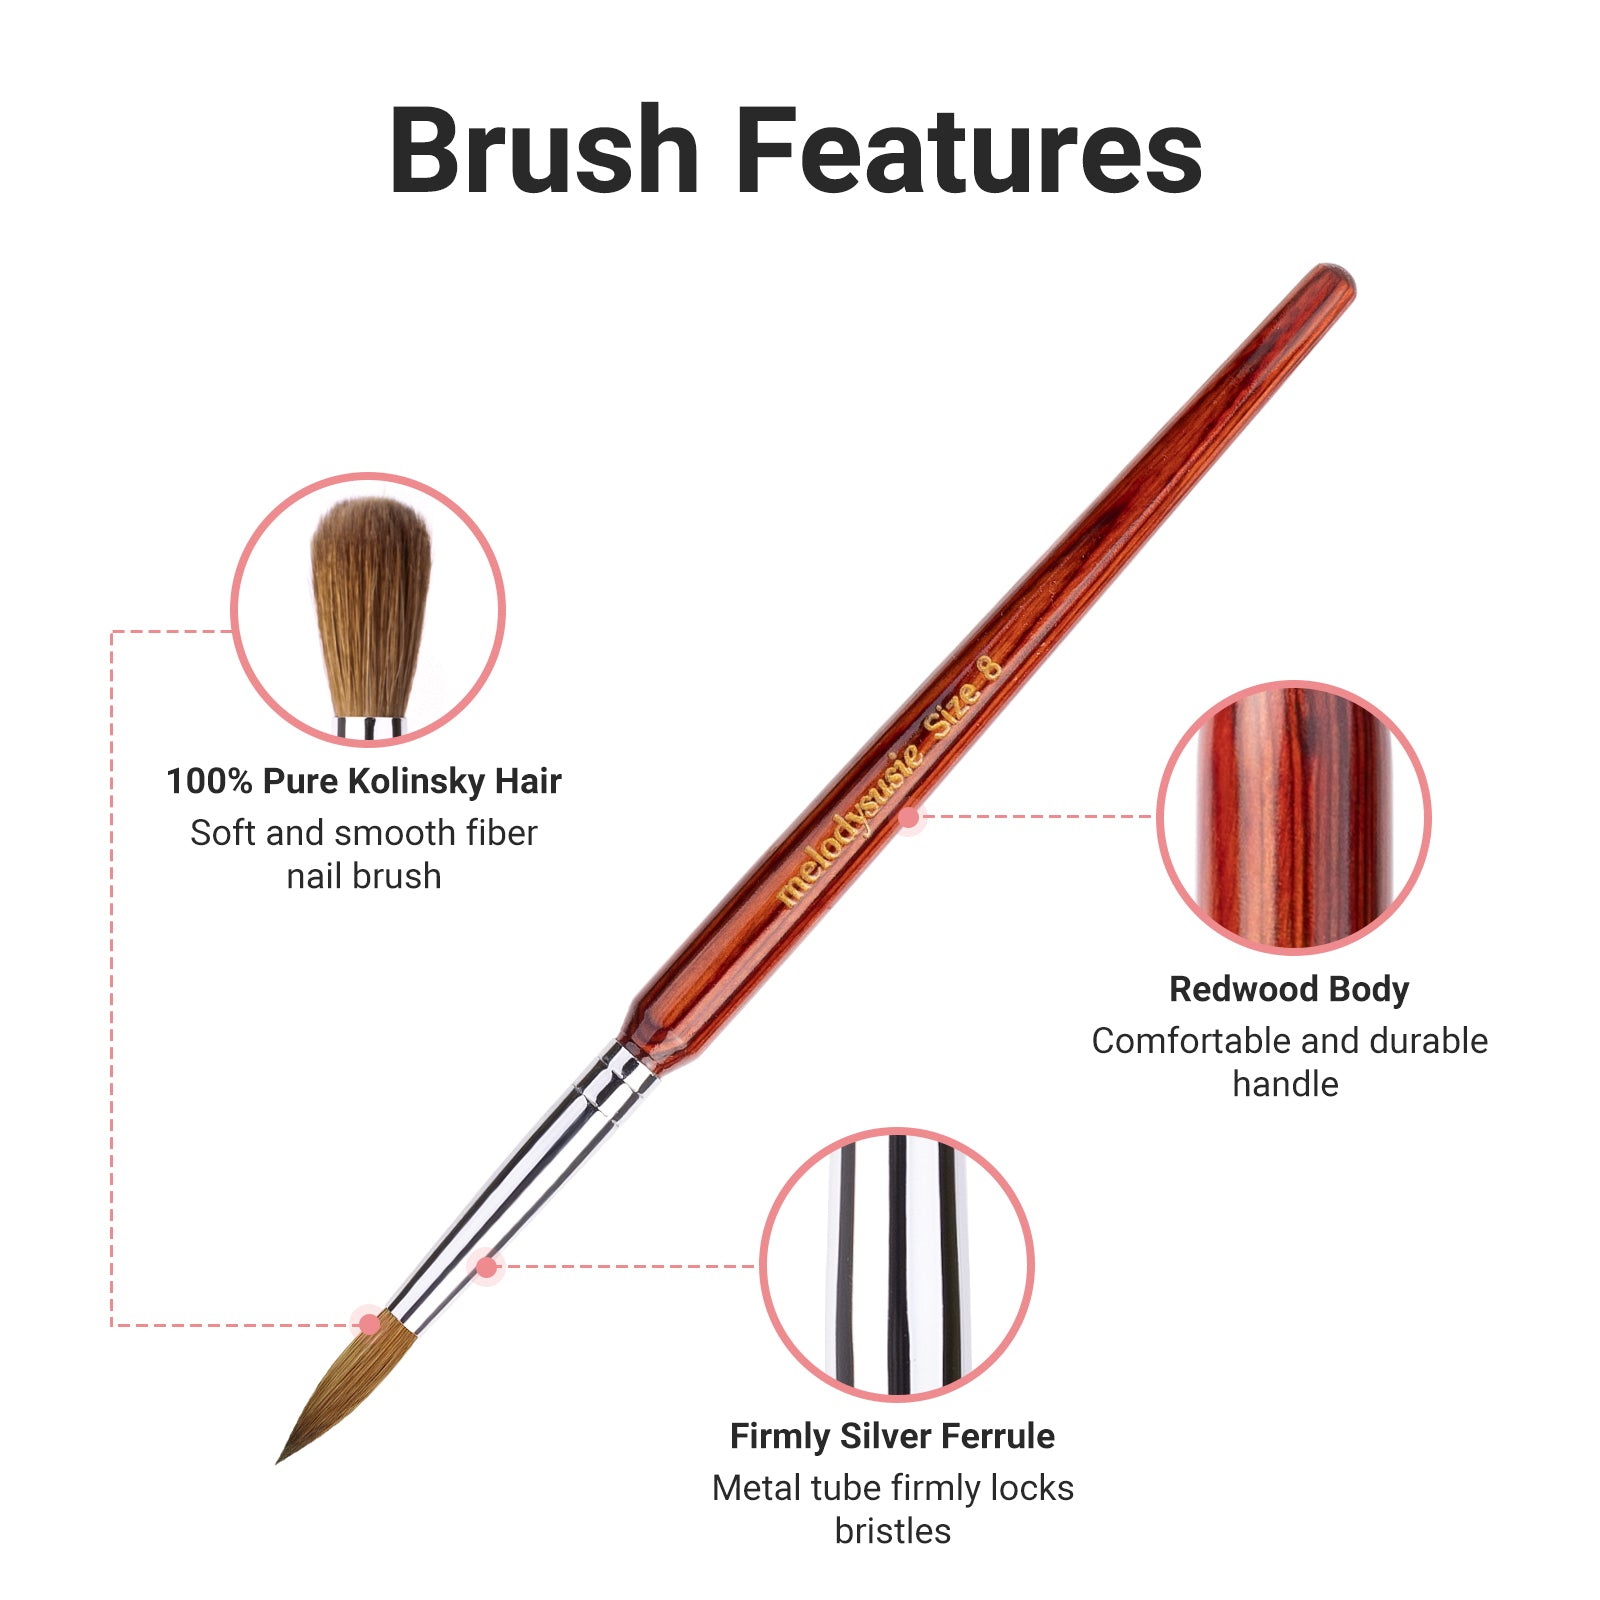 Kolinsky Acrylic Nail Brush - Rosewood Handle